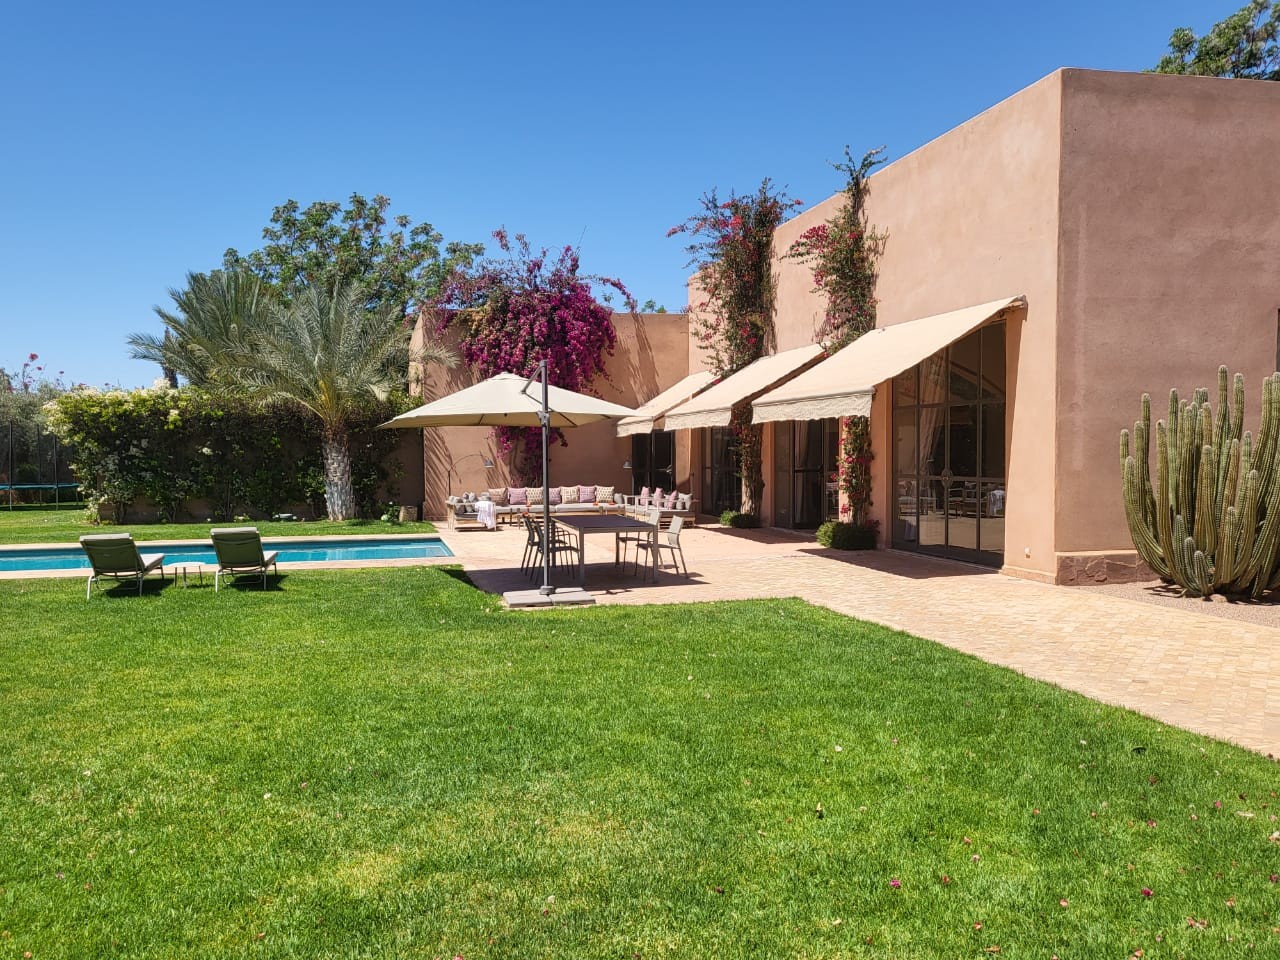 Villa Arouane for rent in Marrakech